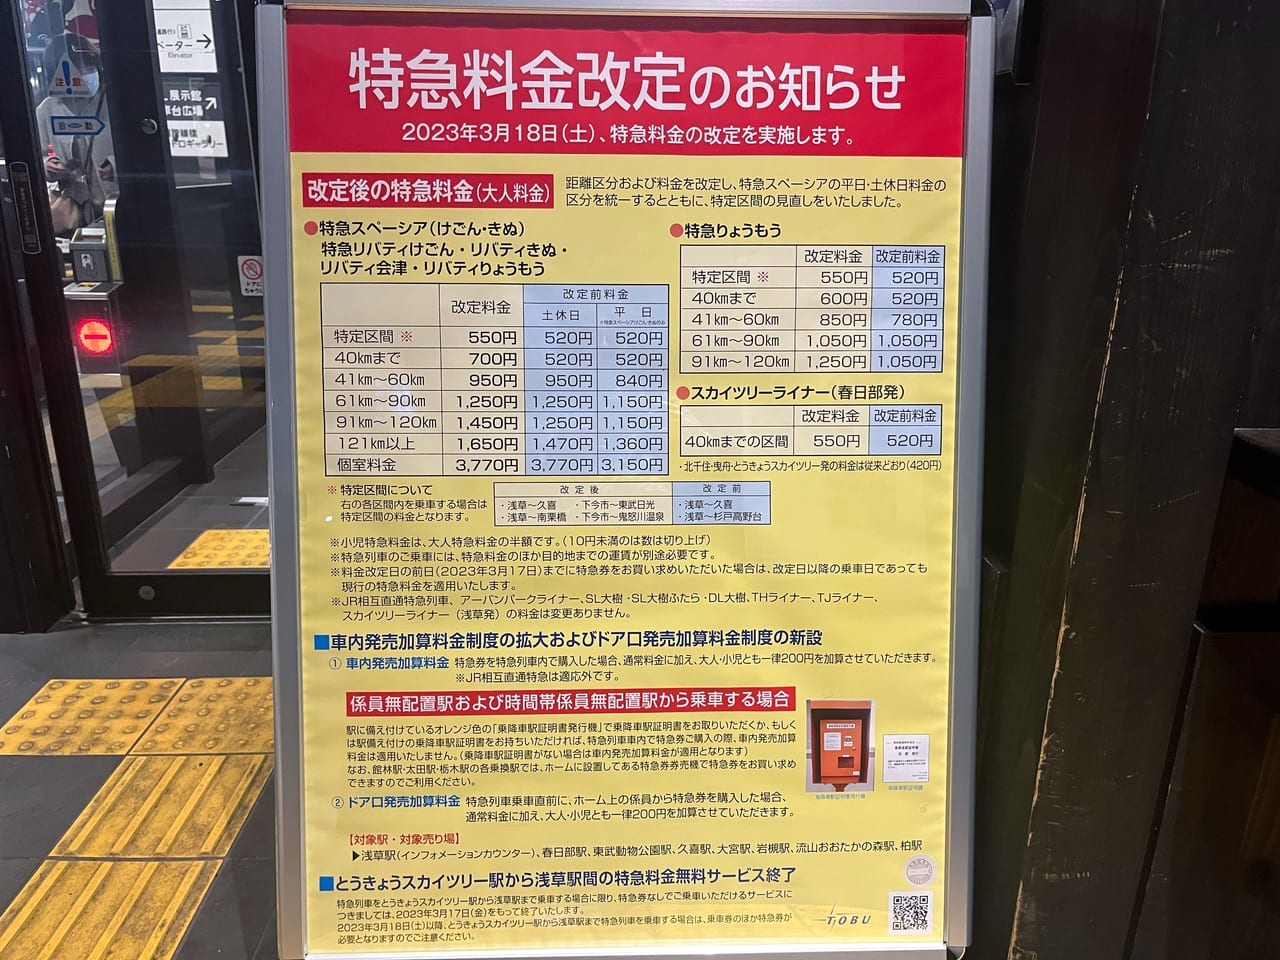 東武鉄道特急料金改定のお知らせ